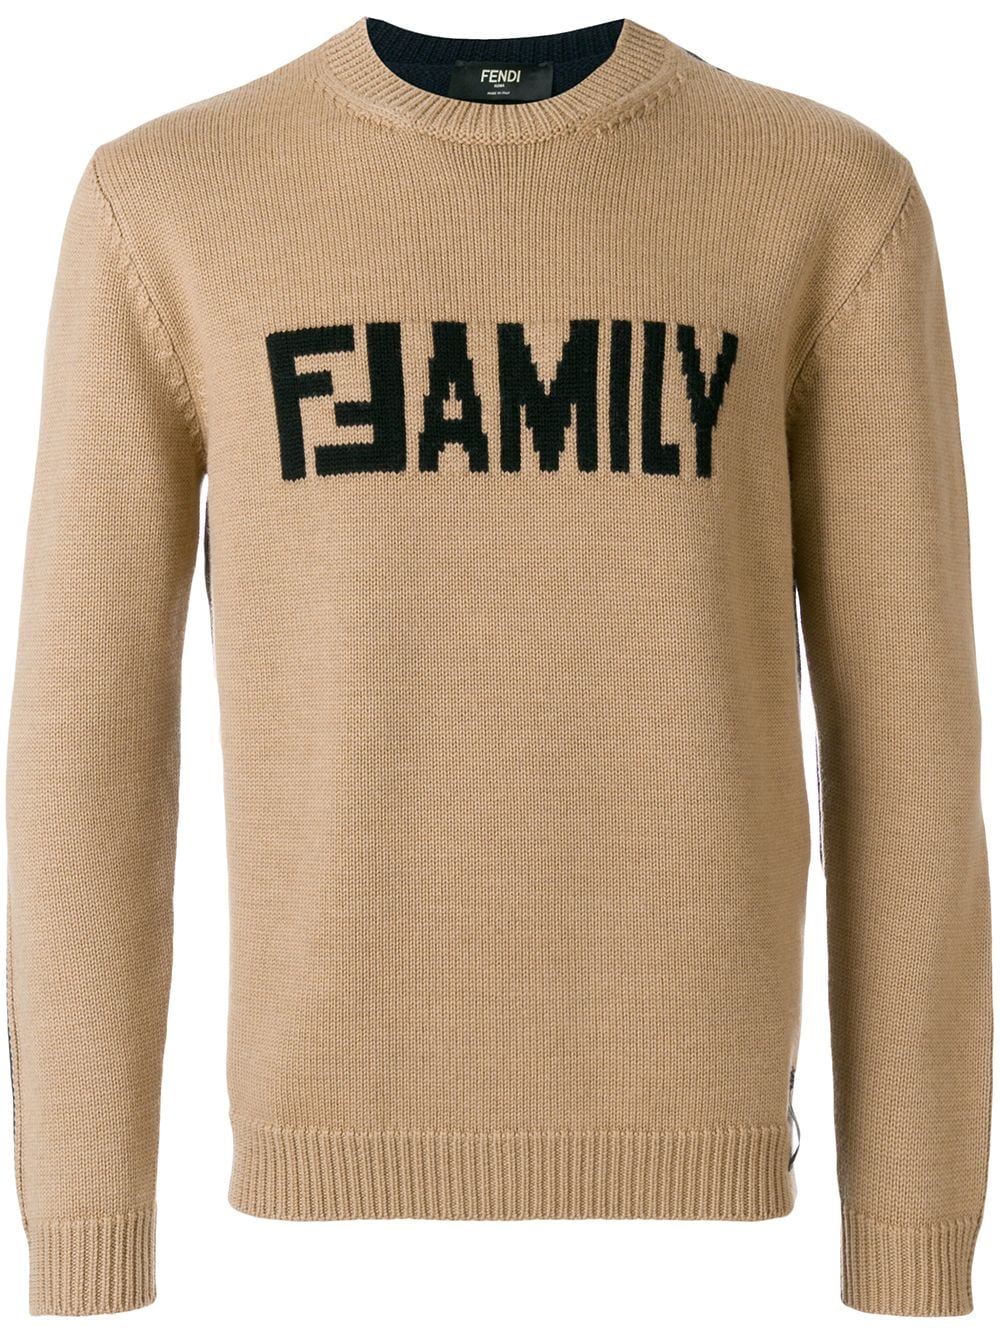 Fendi Family sweater $690 - Buy Online 